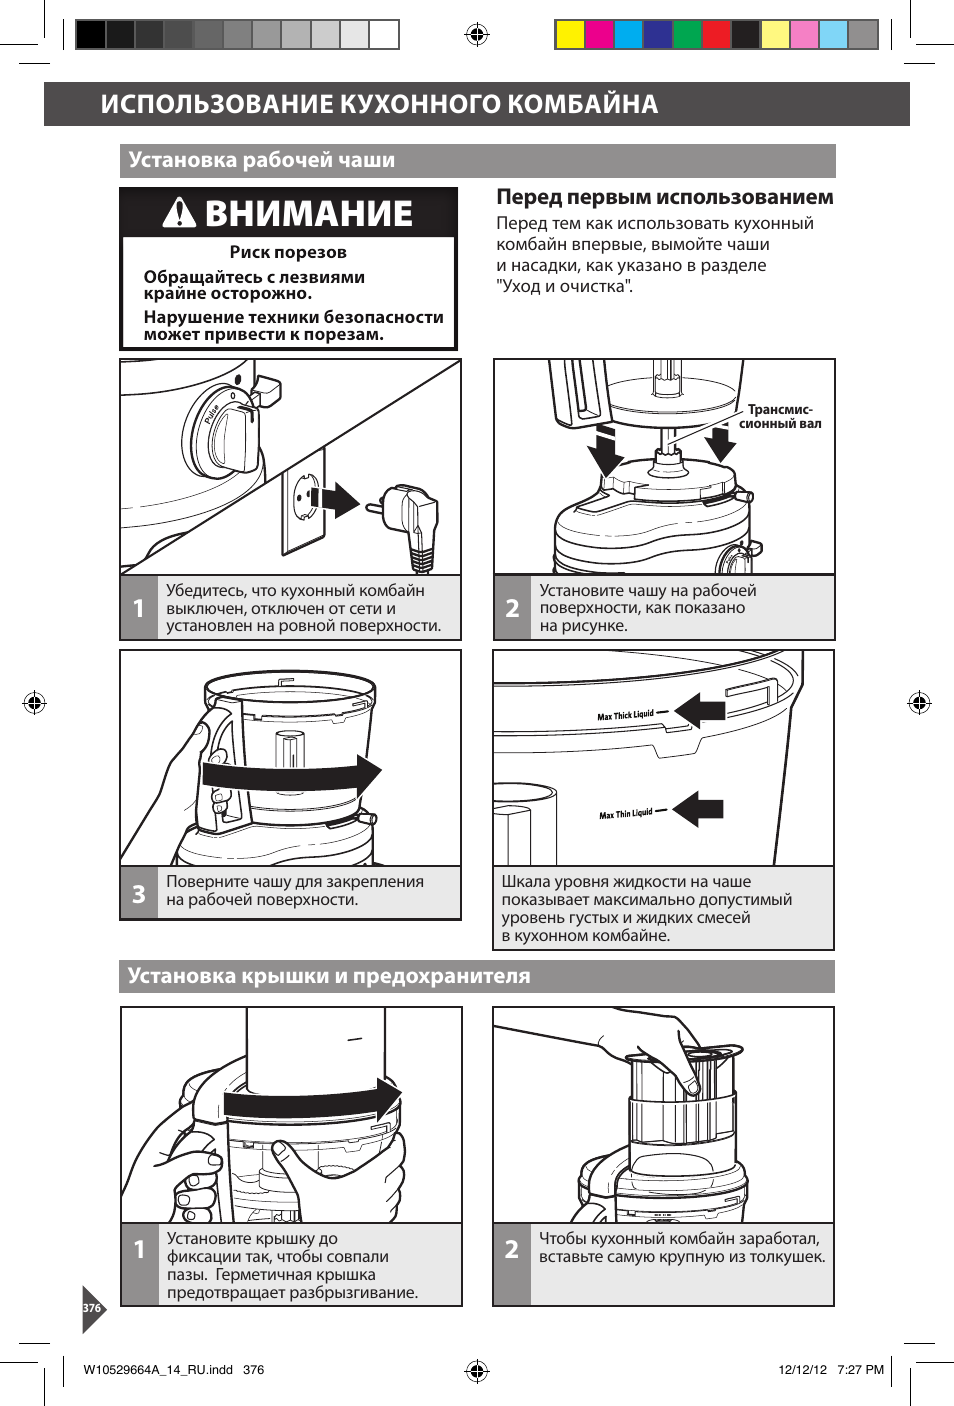 Как пользоваться посудомоечной машиной? инструкция по эксплуатации | ichip.ru